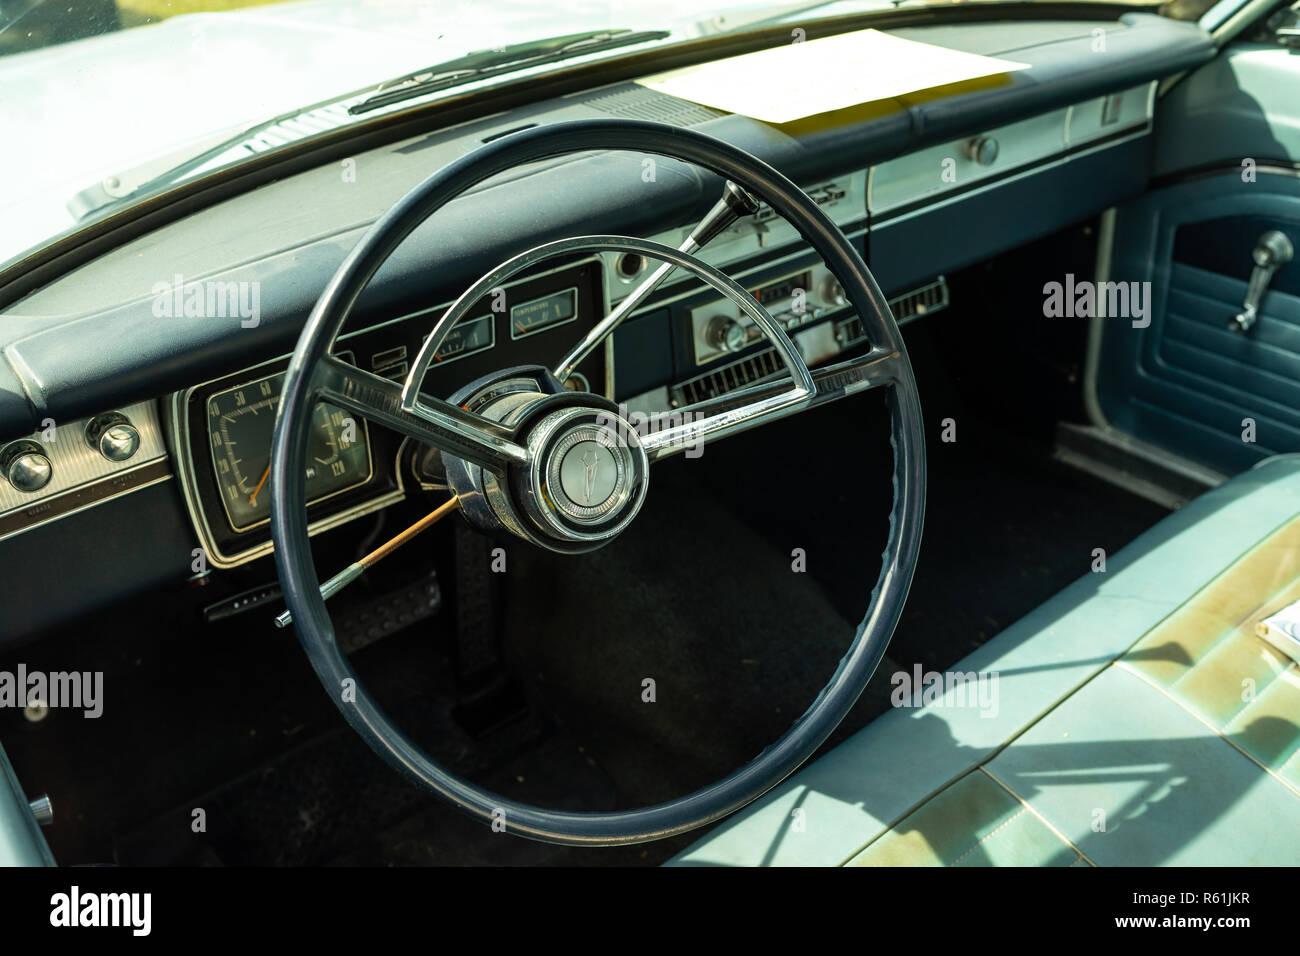 PAAREN IM GLIEN, Germania - 19 Maggio 2018: interni di una vettura compatta Plymouth Valiant 200, 1966. Mostra 'Die Oldtimer Show 2018". Foto Stock